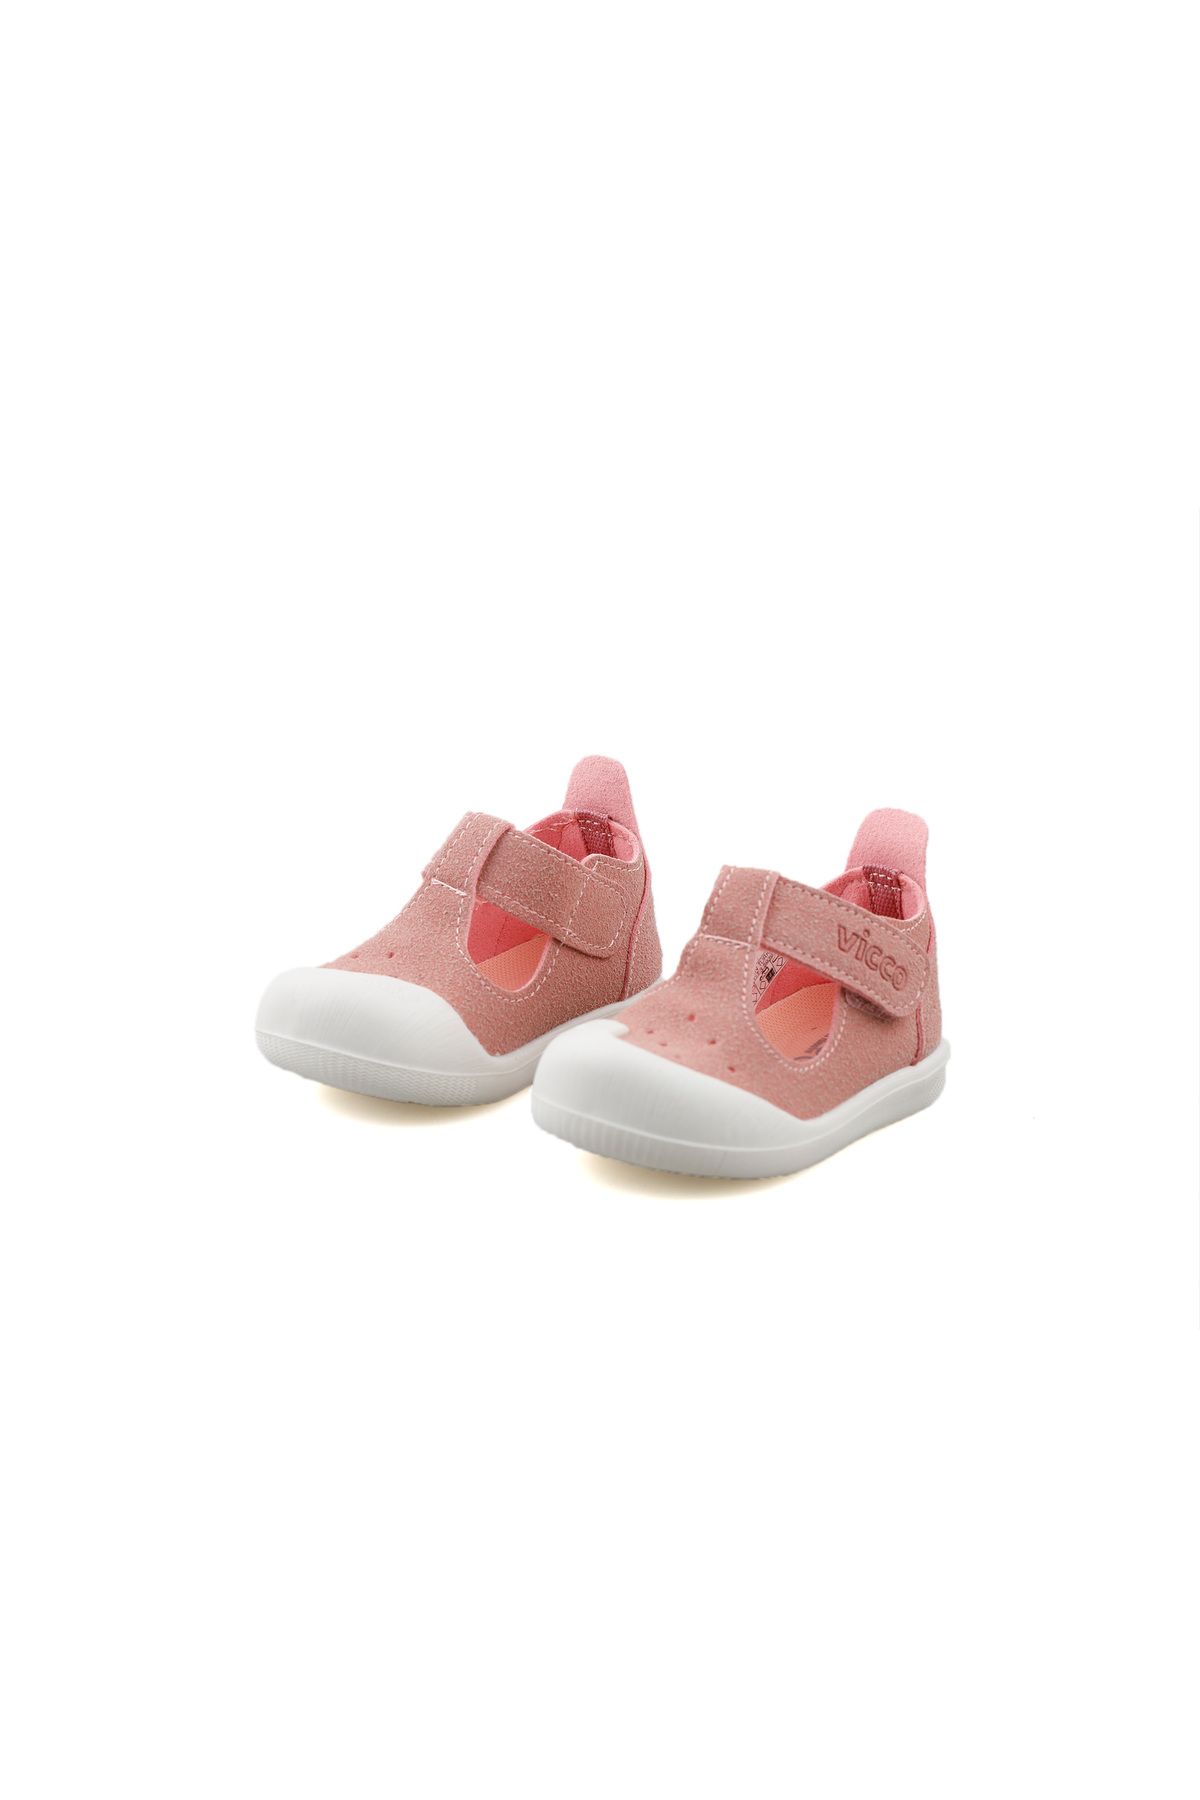 Vicco Günlük Rahat Kalıp Bebek Çocuk İlk Adım Ayakkabısı Panduf Renkli